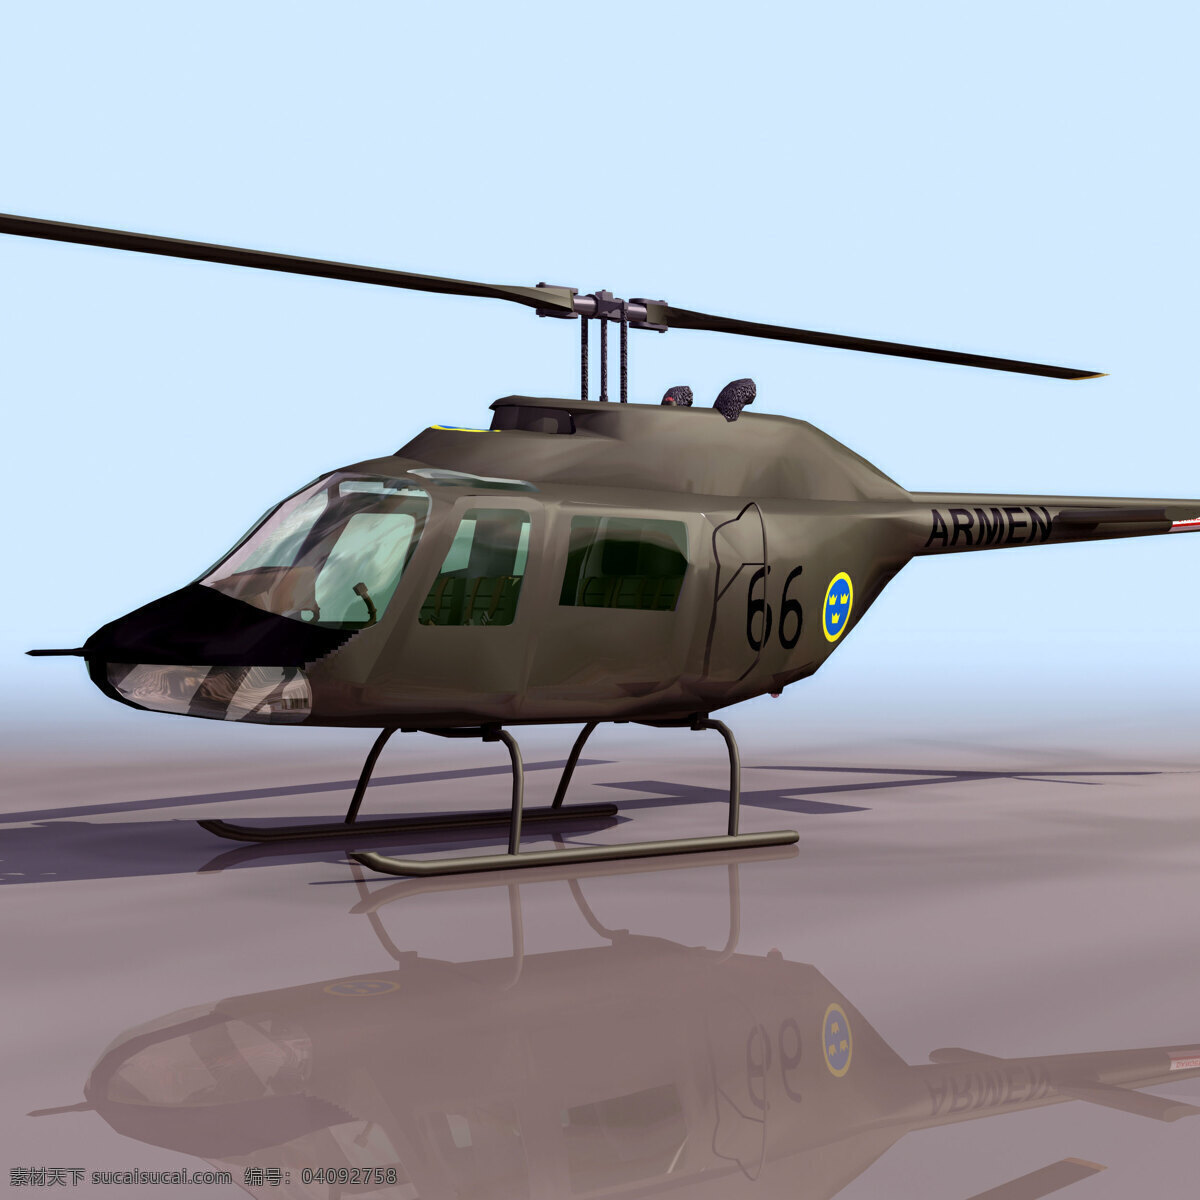 直升机 模型 abjetr2 直升机模型 民用飞机 3d模型素材 电器模型